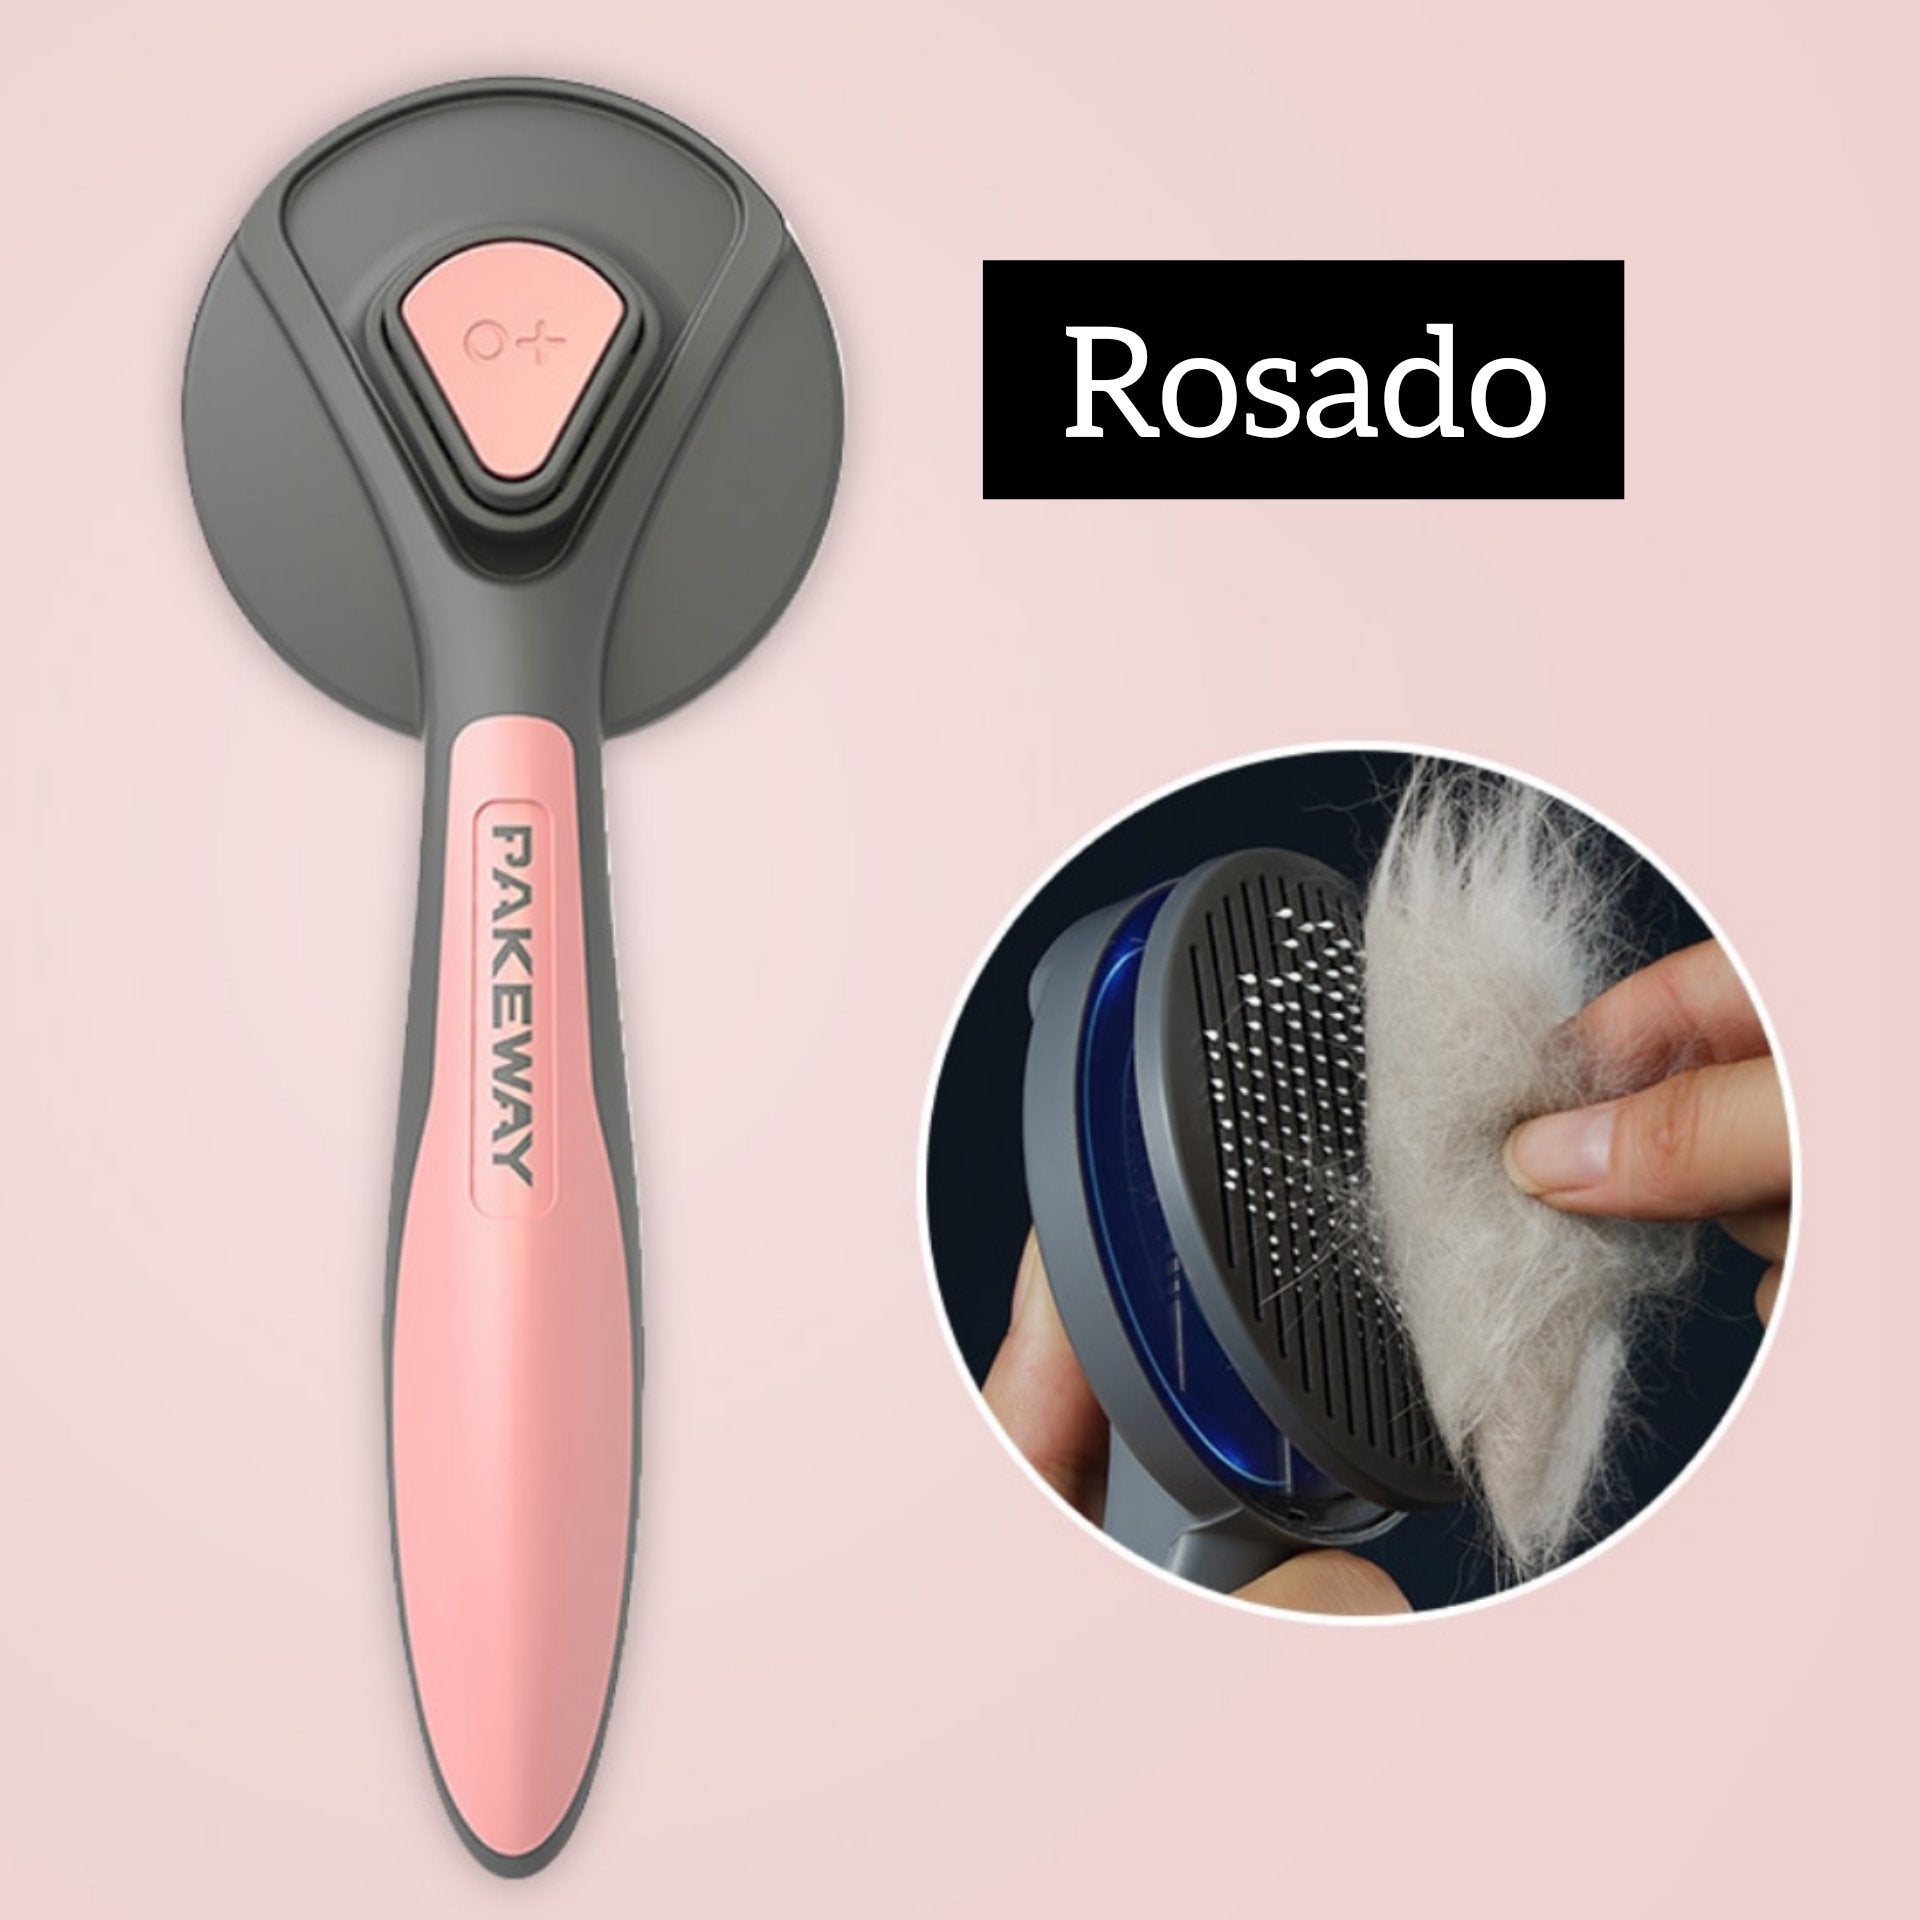 MagicBrush ™ - Peine para mascotas - ENGLA Chile ® Rosado